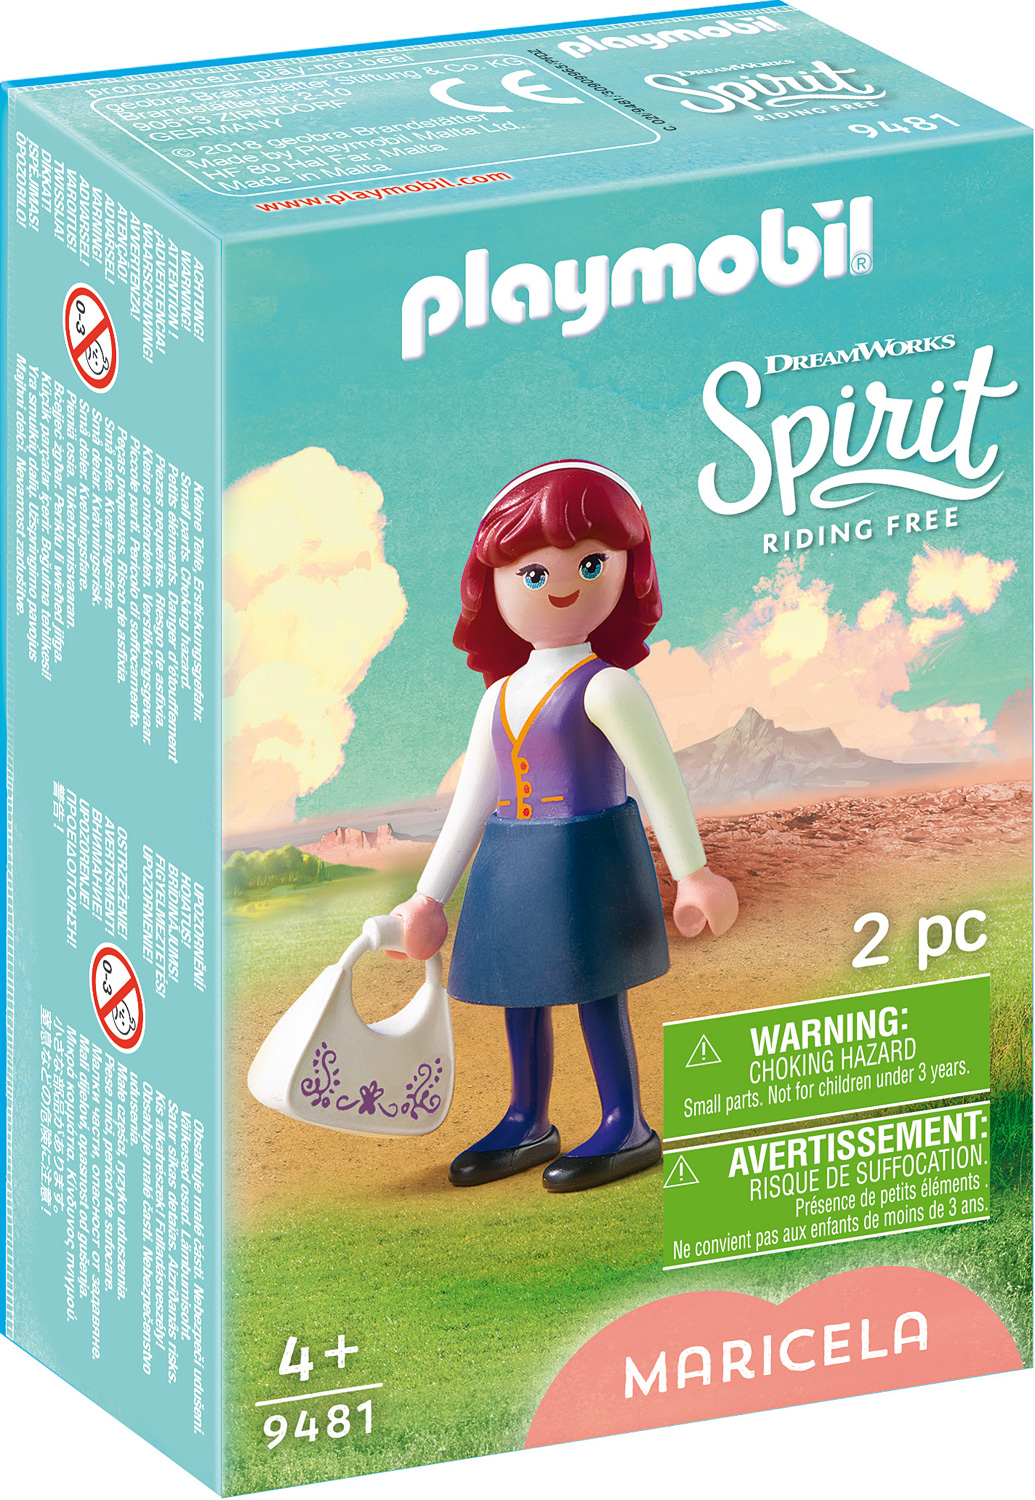 Playmobil Spirit Riding Free Maricela Set #9481 